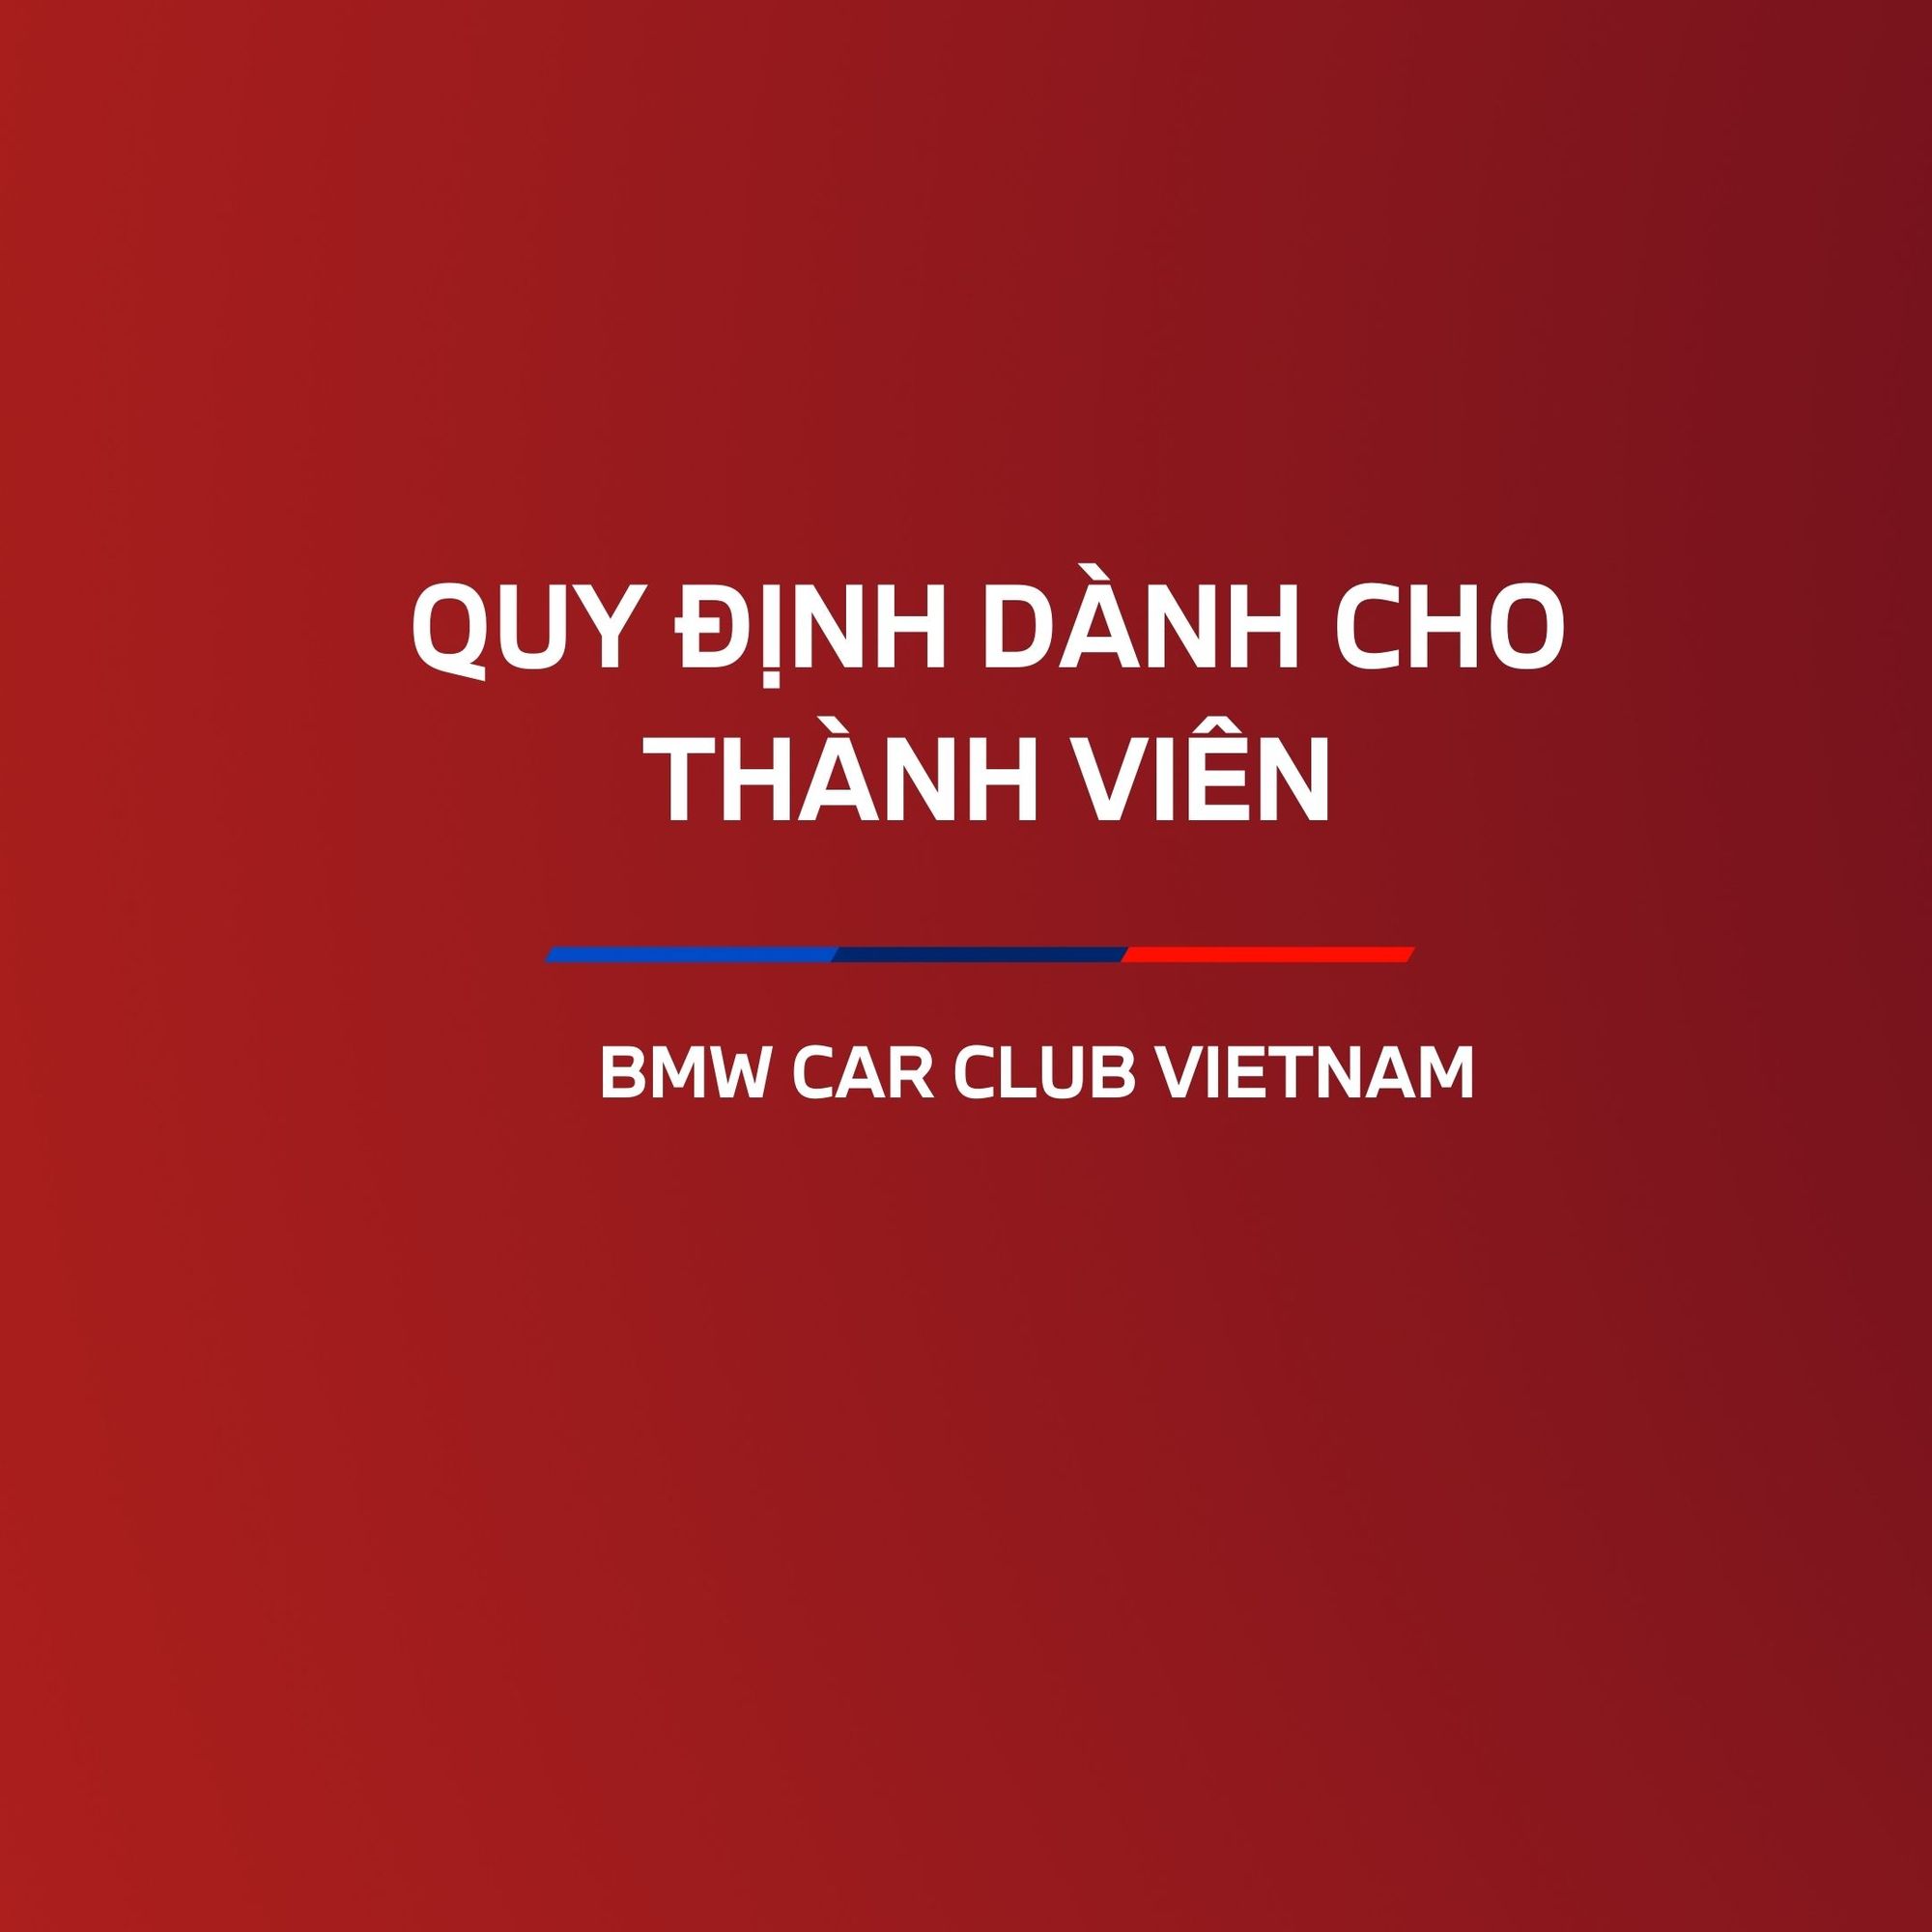 Quy định dành cho thành viên BMW Car Club Vietnam